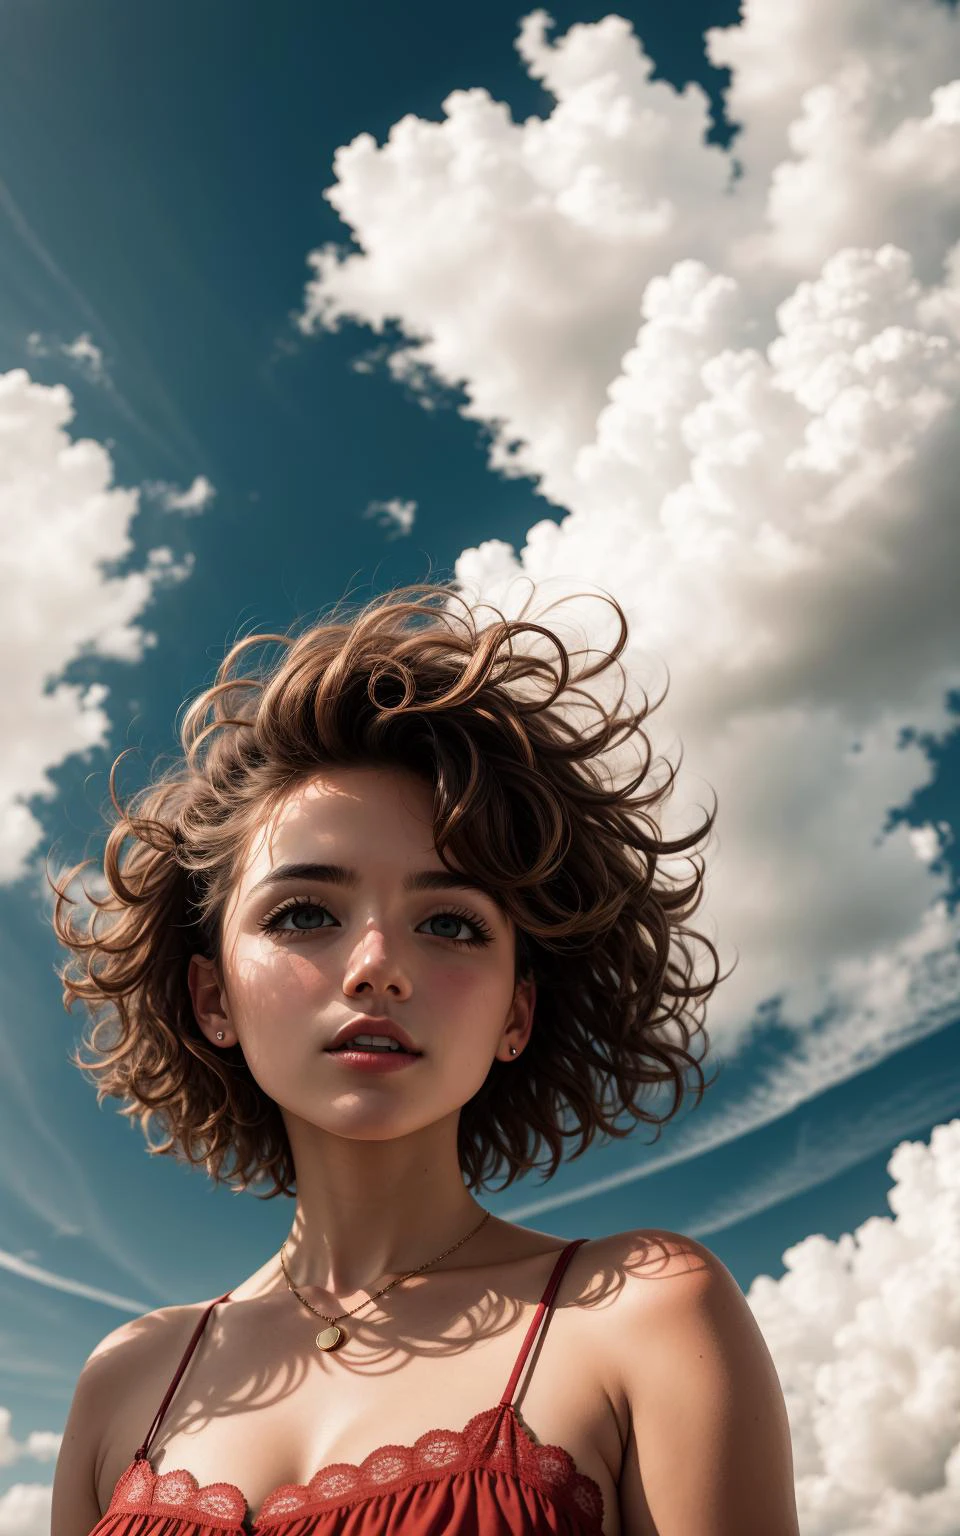 (desde abajo:0.6), Retrato foto de mujer en ropa, rostro, cabello corto, posando, hermoso fondo, Nubes, viento, 8k hd, alta calidad, grano de la película